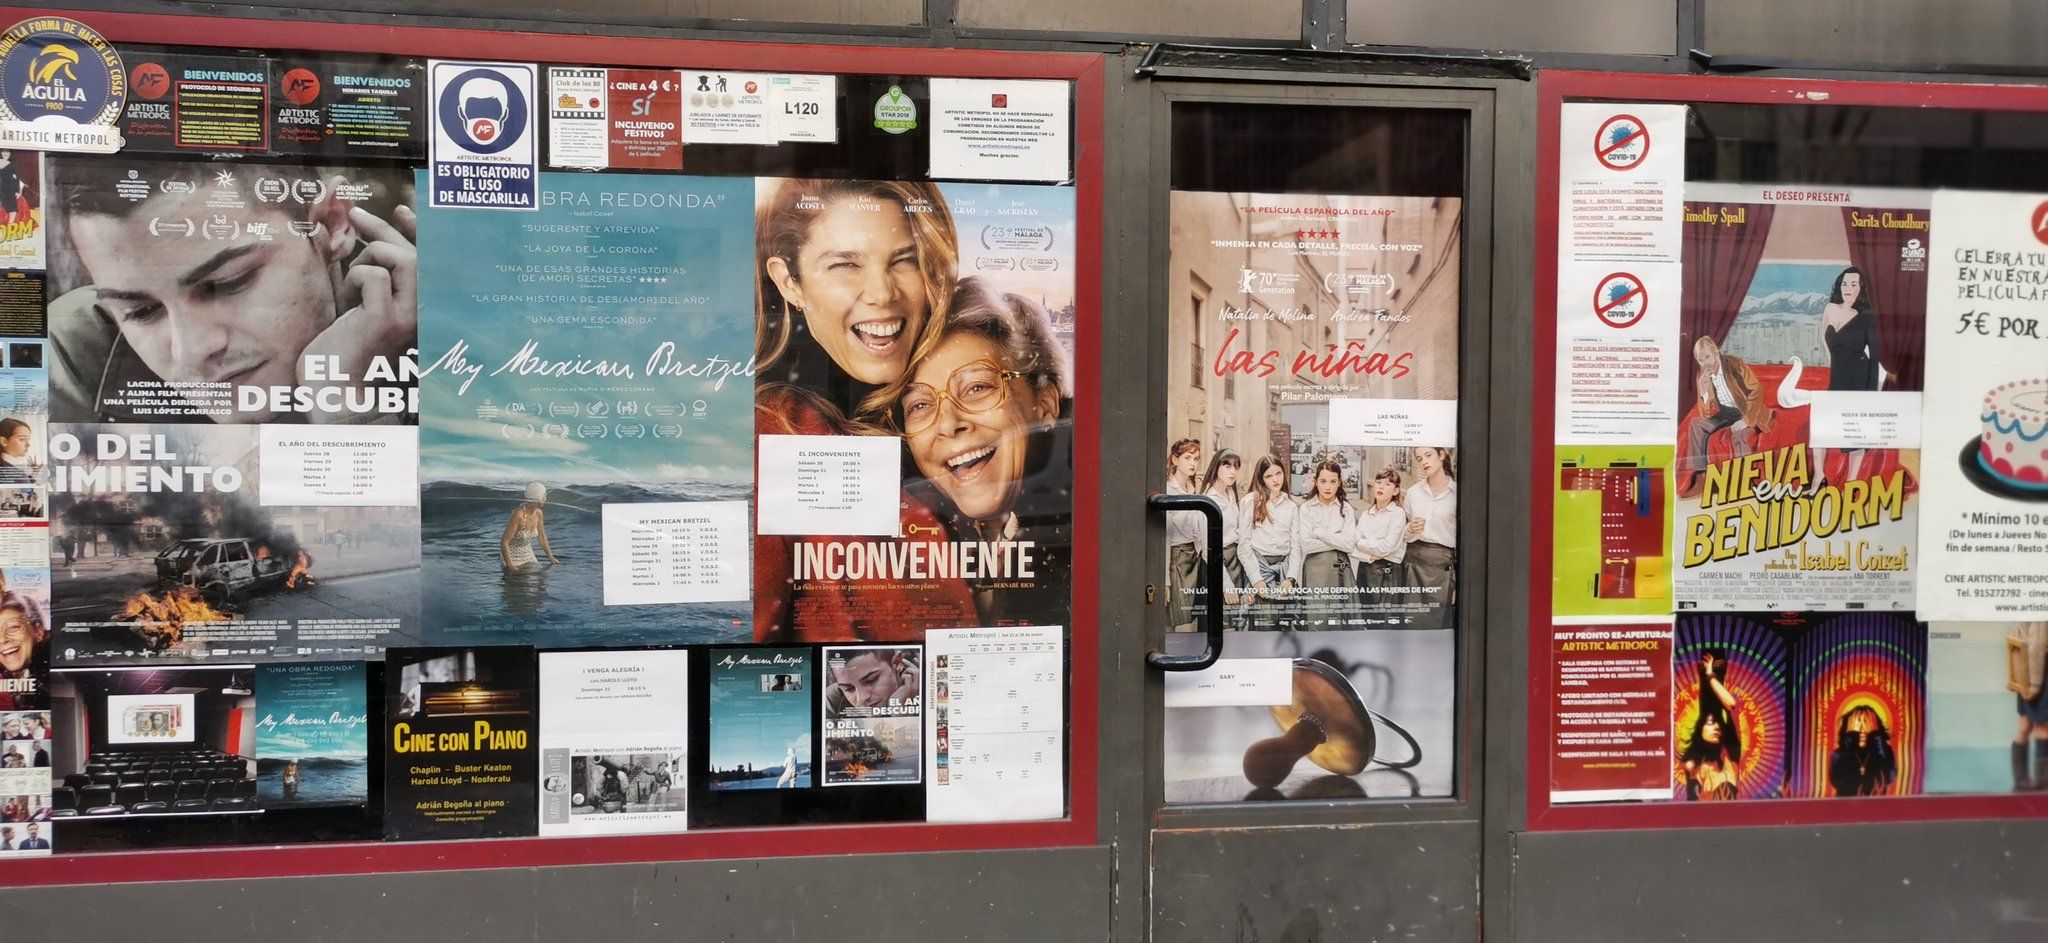 El cine Artistic Metropol de Madrid retrocede en el tiempo y vende sus entradas a mil pesetas